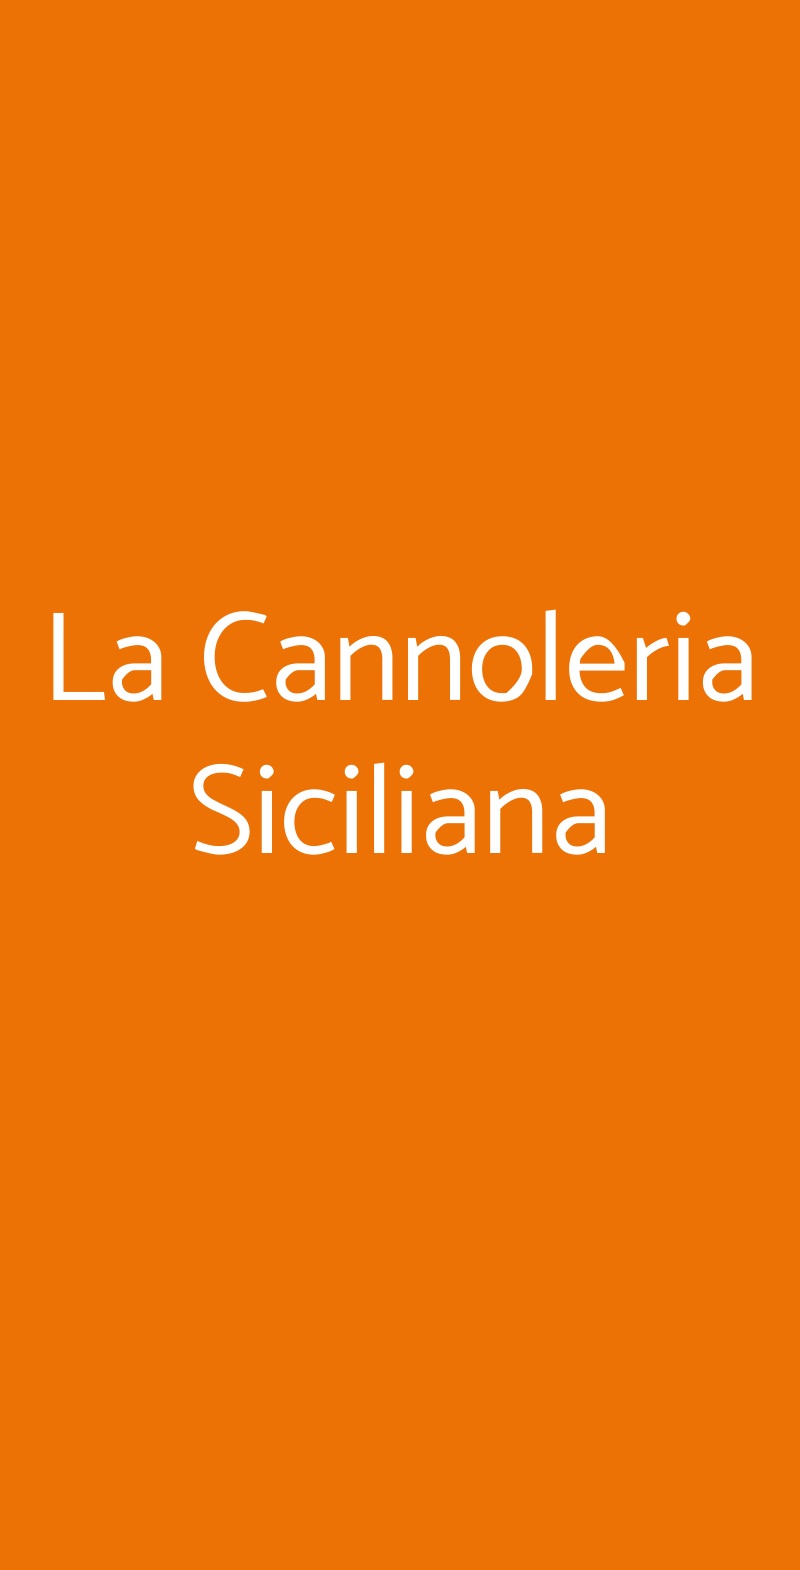 La Cannoleria Siciliana Roma menù 1 pagina